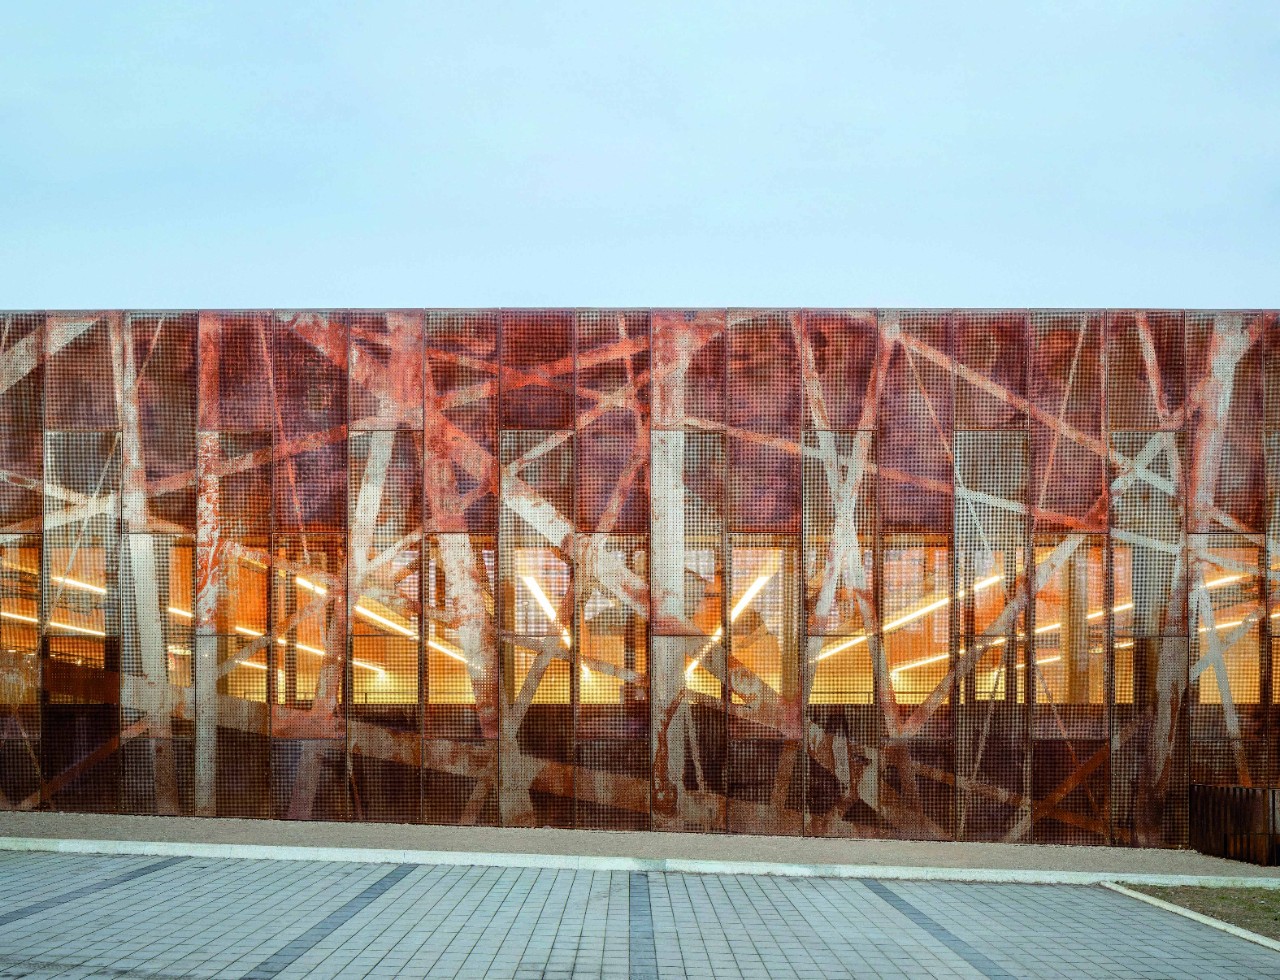 Ce hall sportif à Bridel a convaincu le jury par la superposition de plans en facade et une légèreté visuelle.